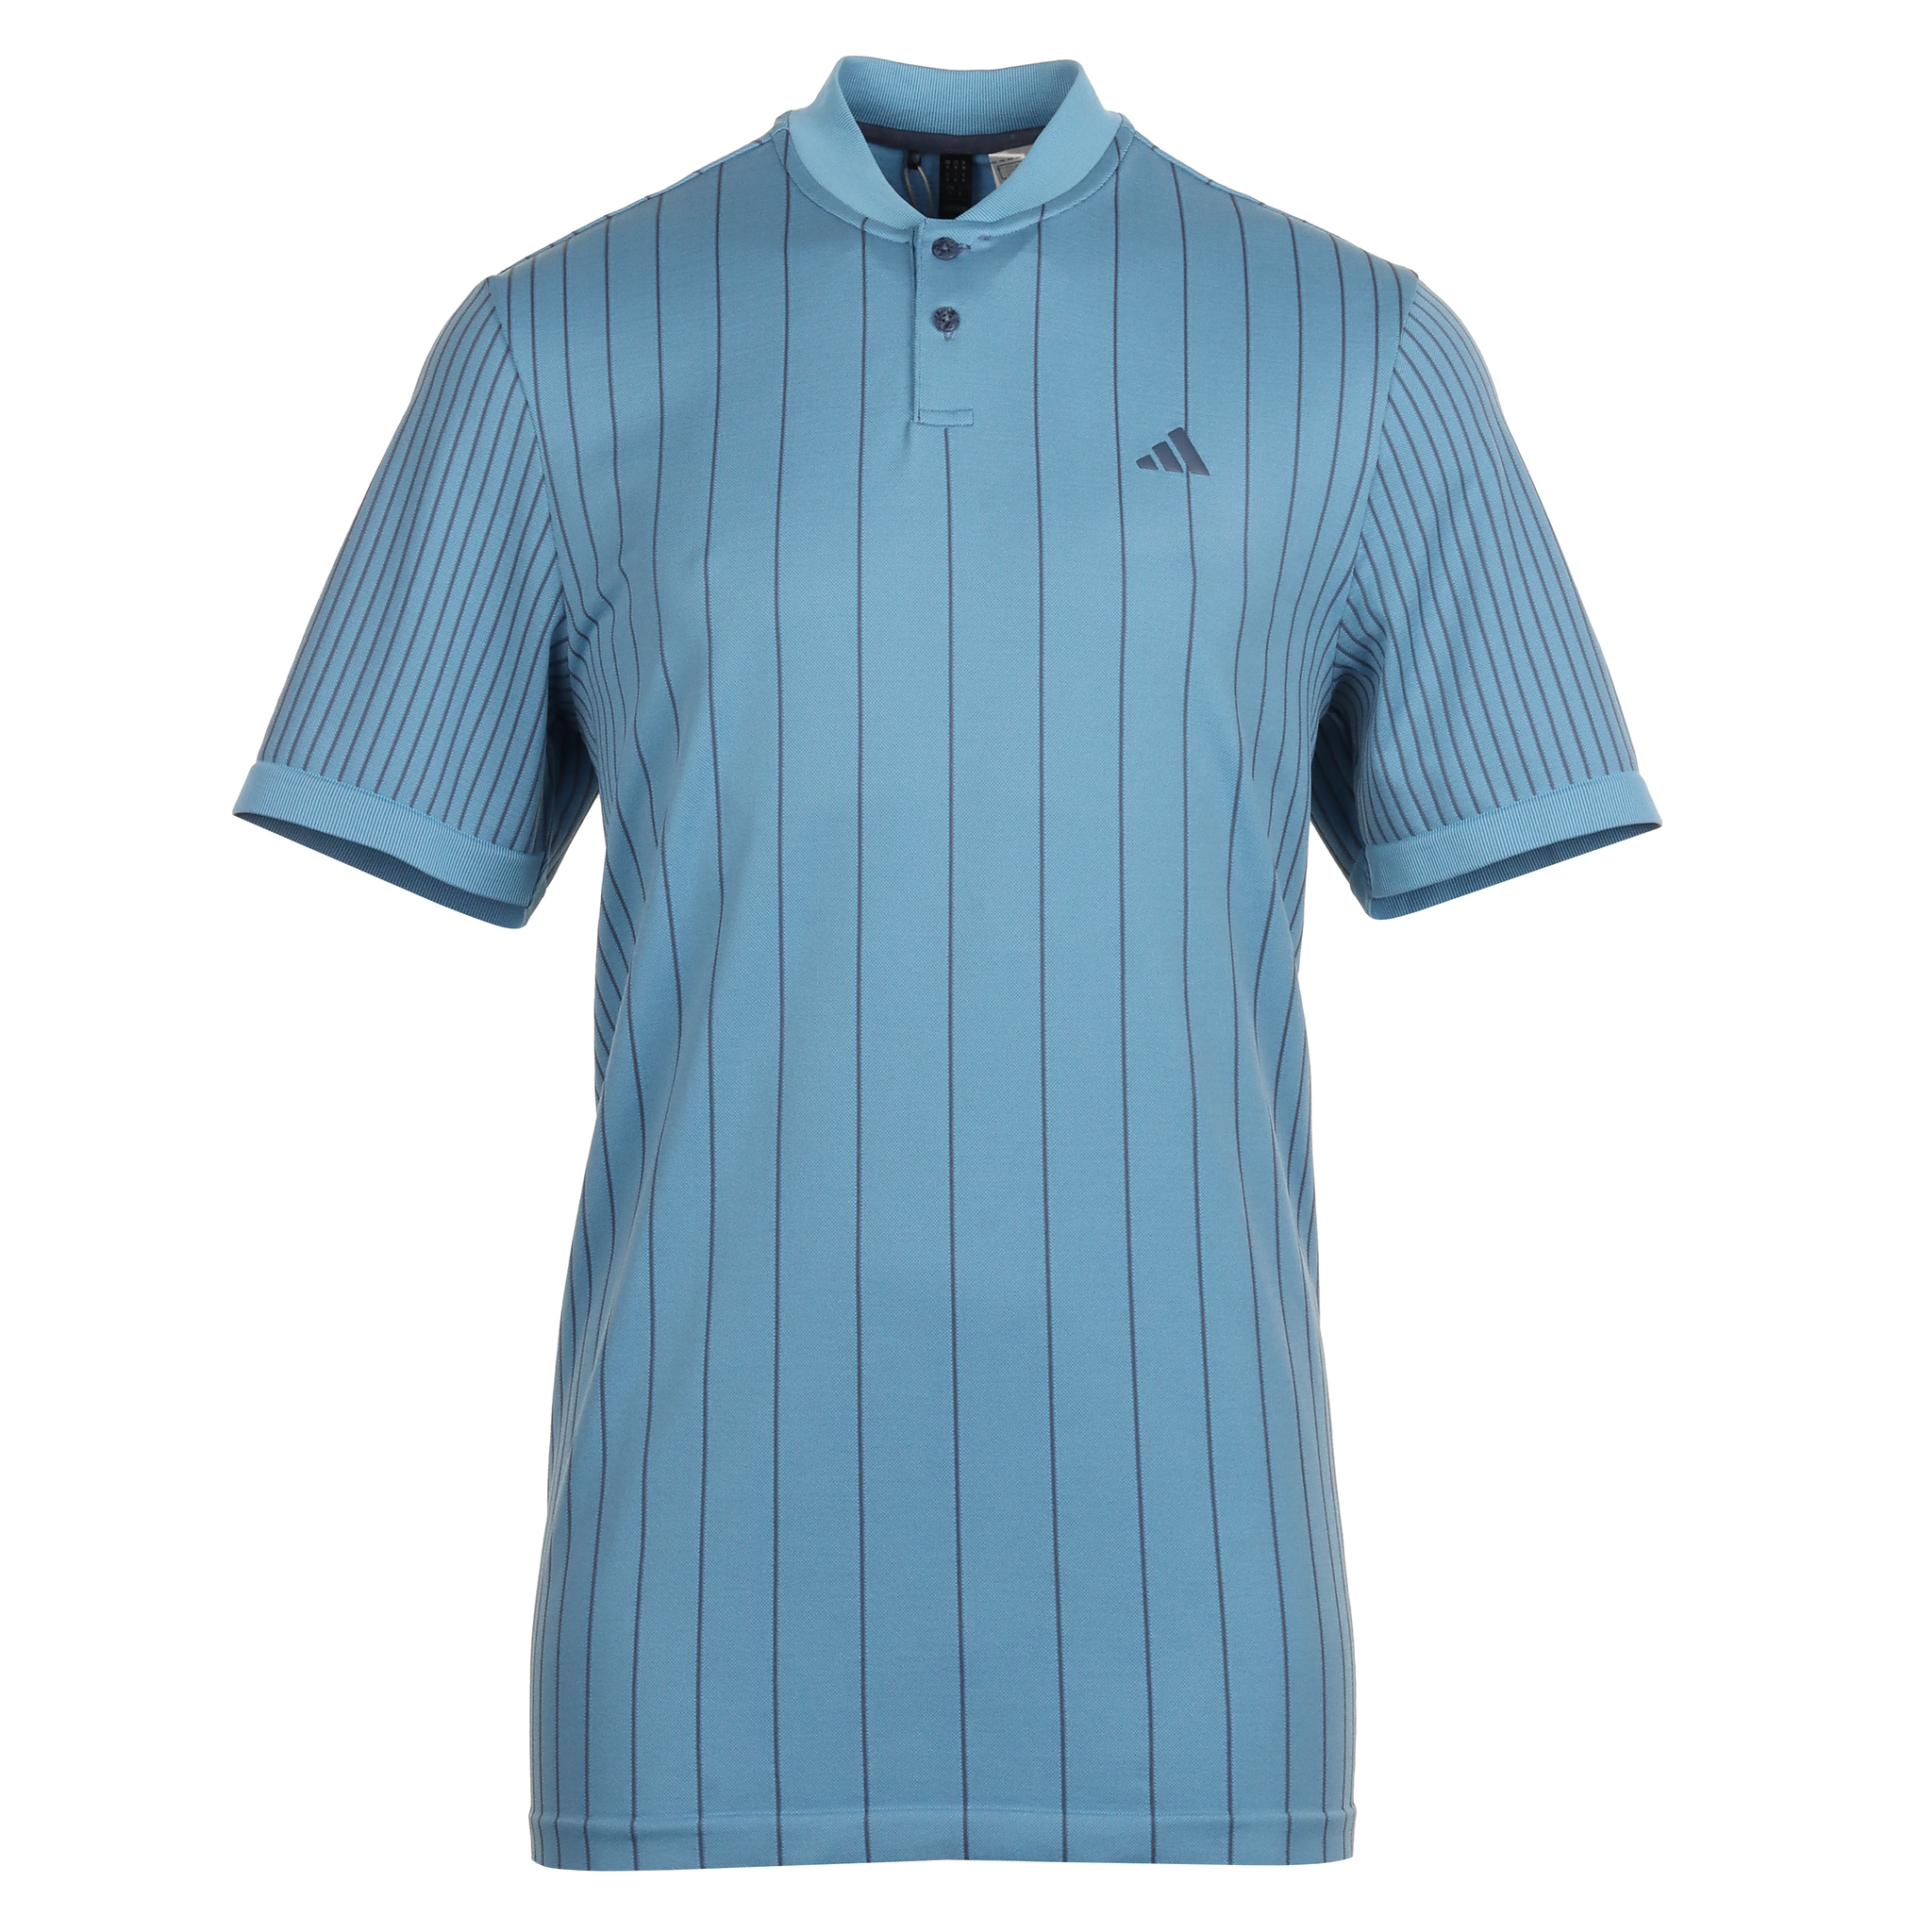 adidas Golf Ultimate365 Tour Primeknit Shirt